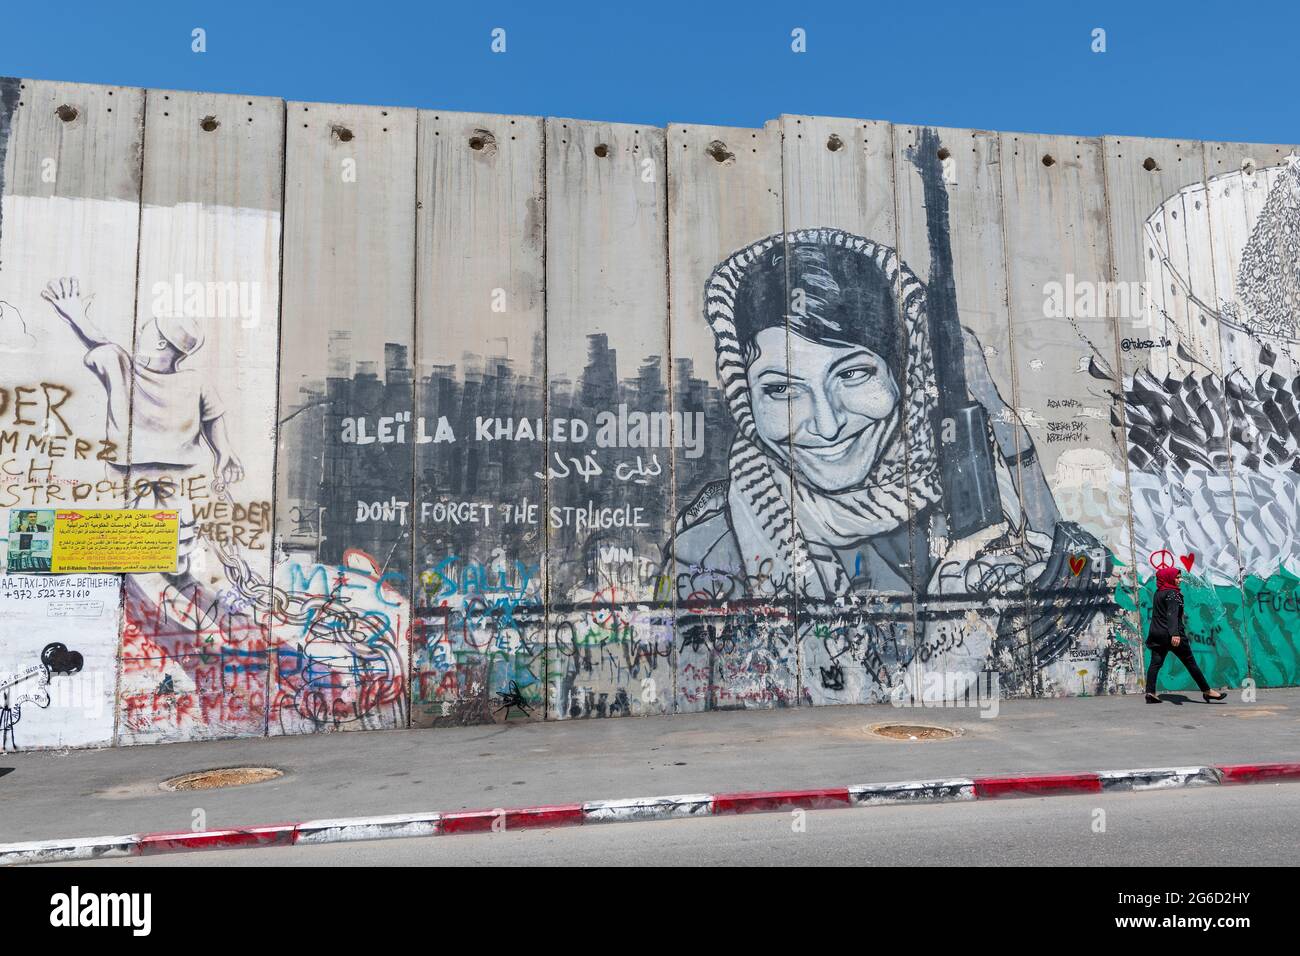 Graffiti von Leila Khaled, einem palästinensischen Flüchtling, an der palästinensisch-israelischen Grenzmauer in Bethlehem, Palästina. Westjordanland Stockfoto